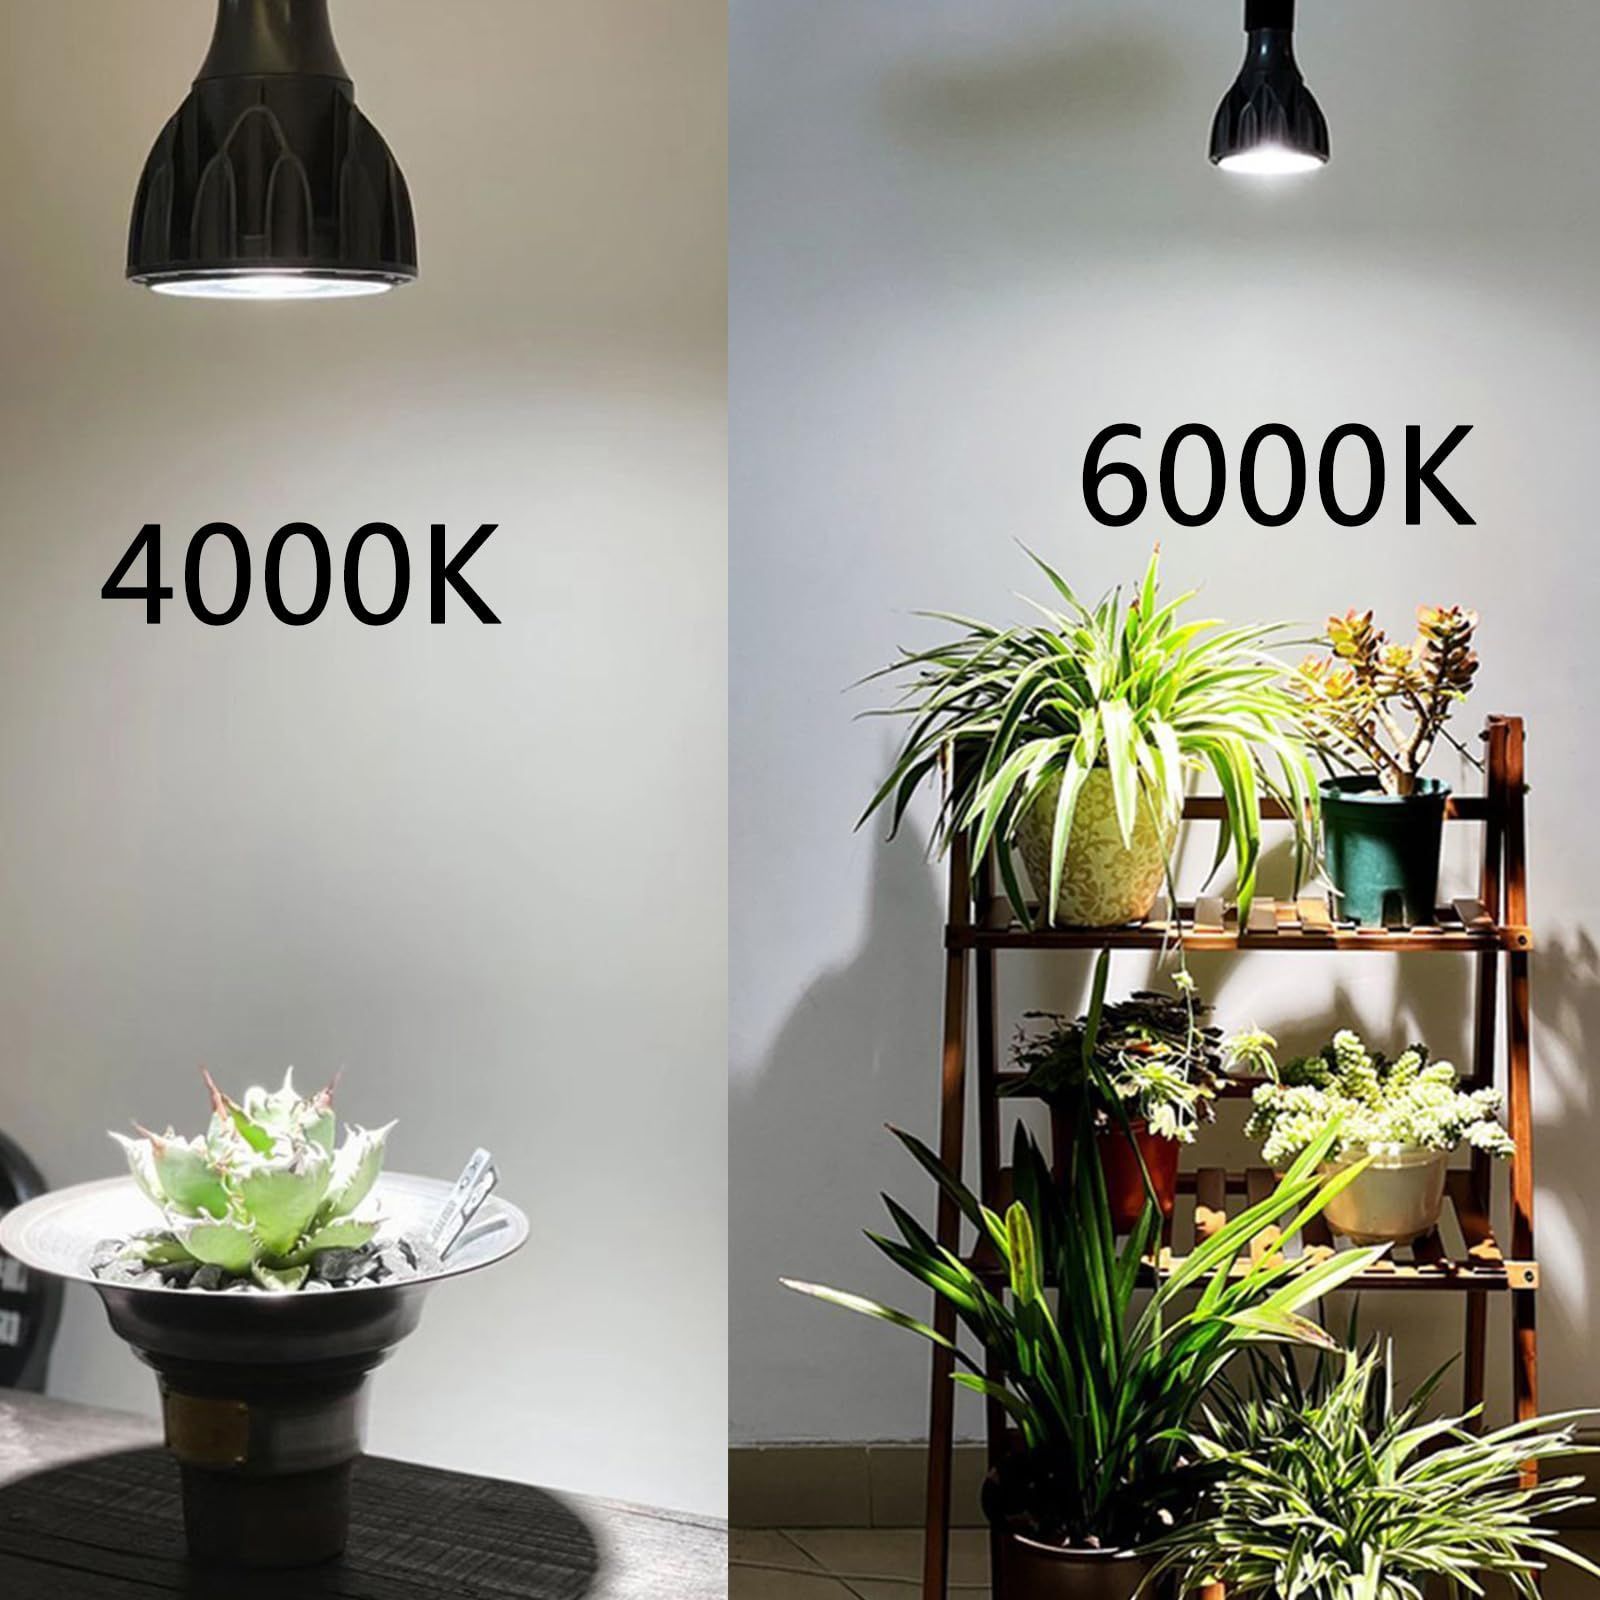 LED植物育成ライト 100W相当 太陽のような自然光 COBチップ